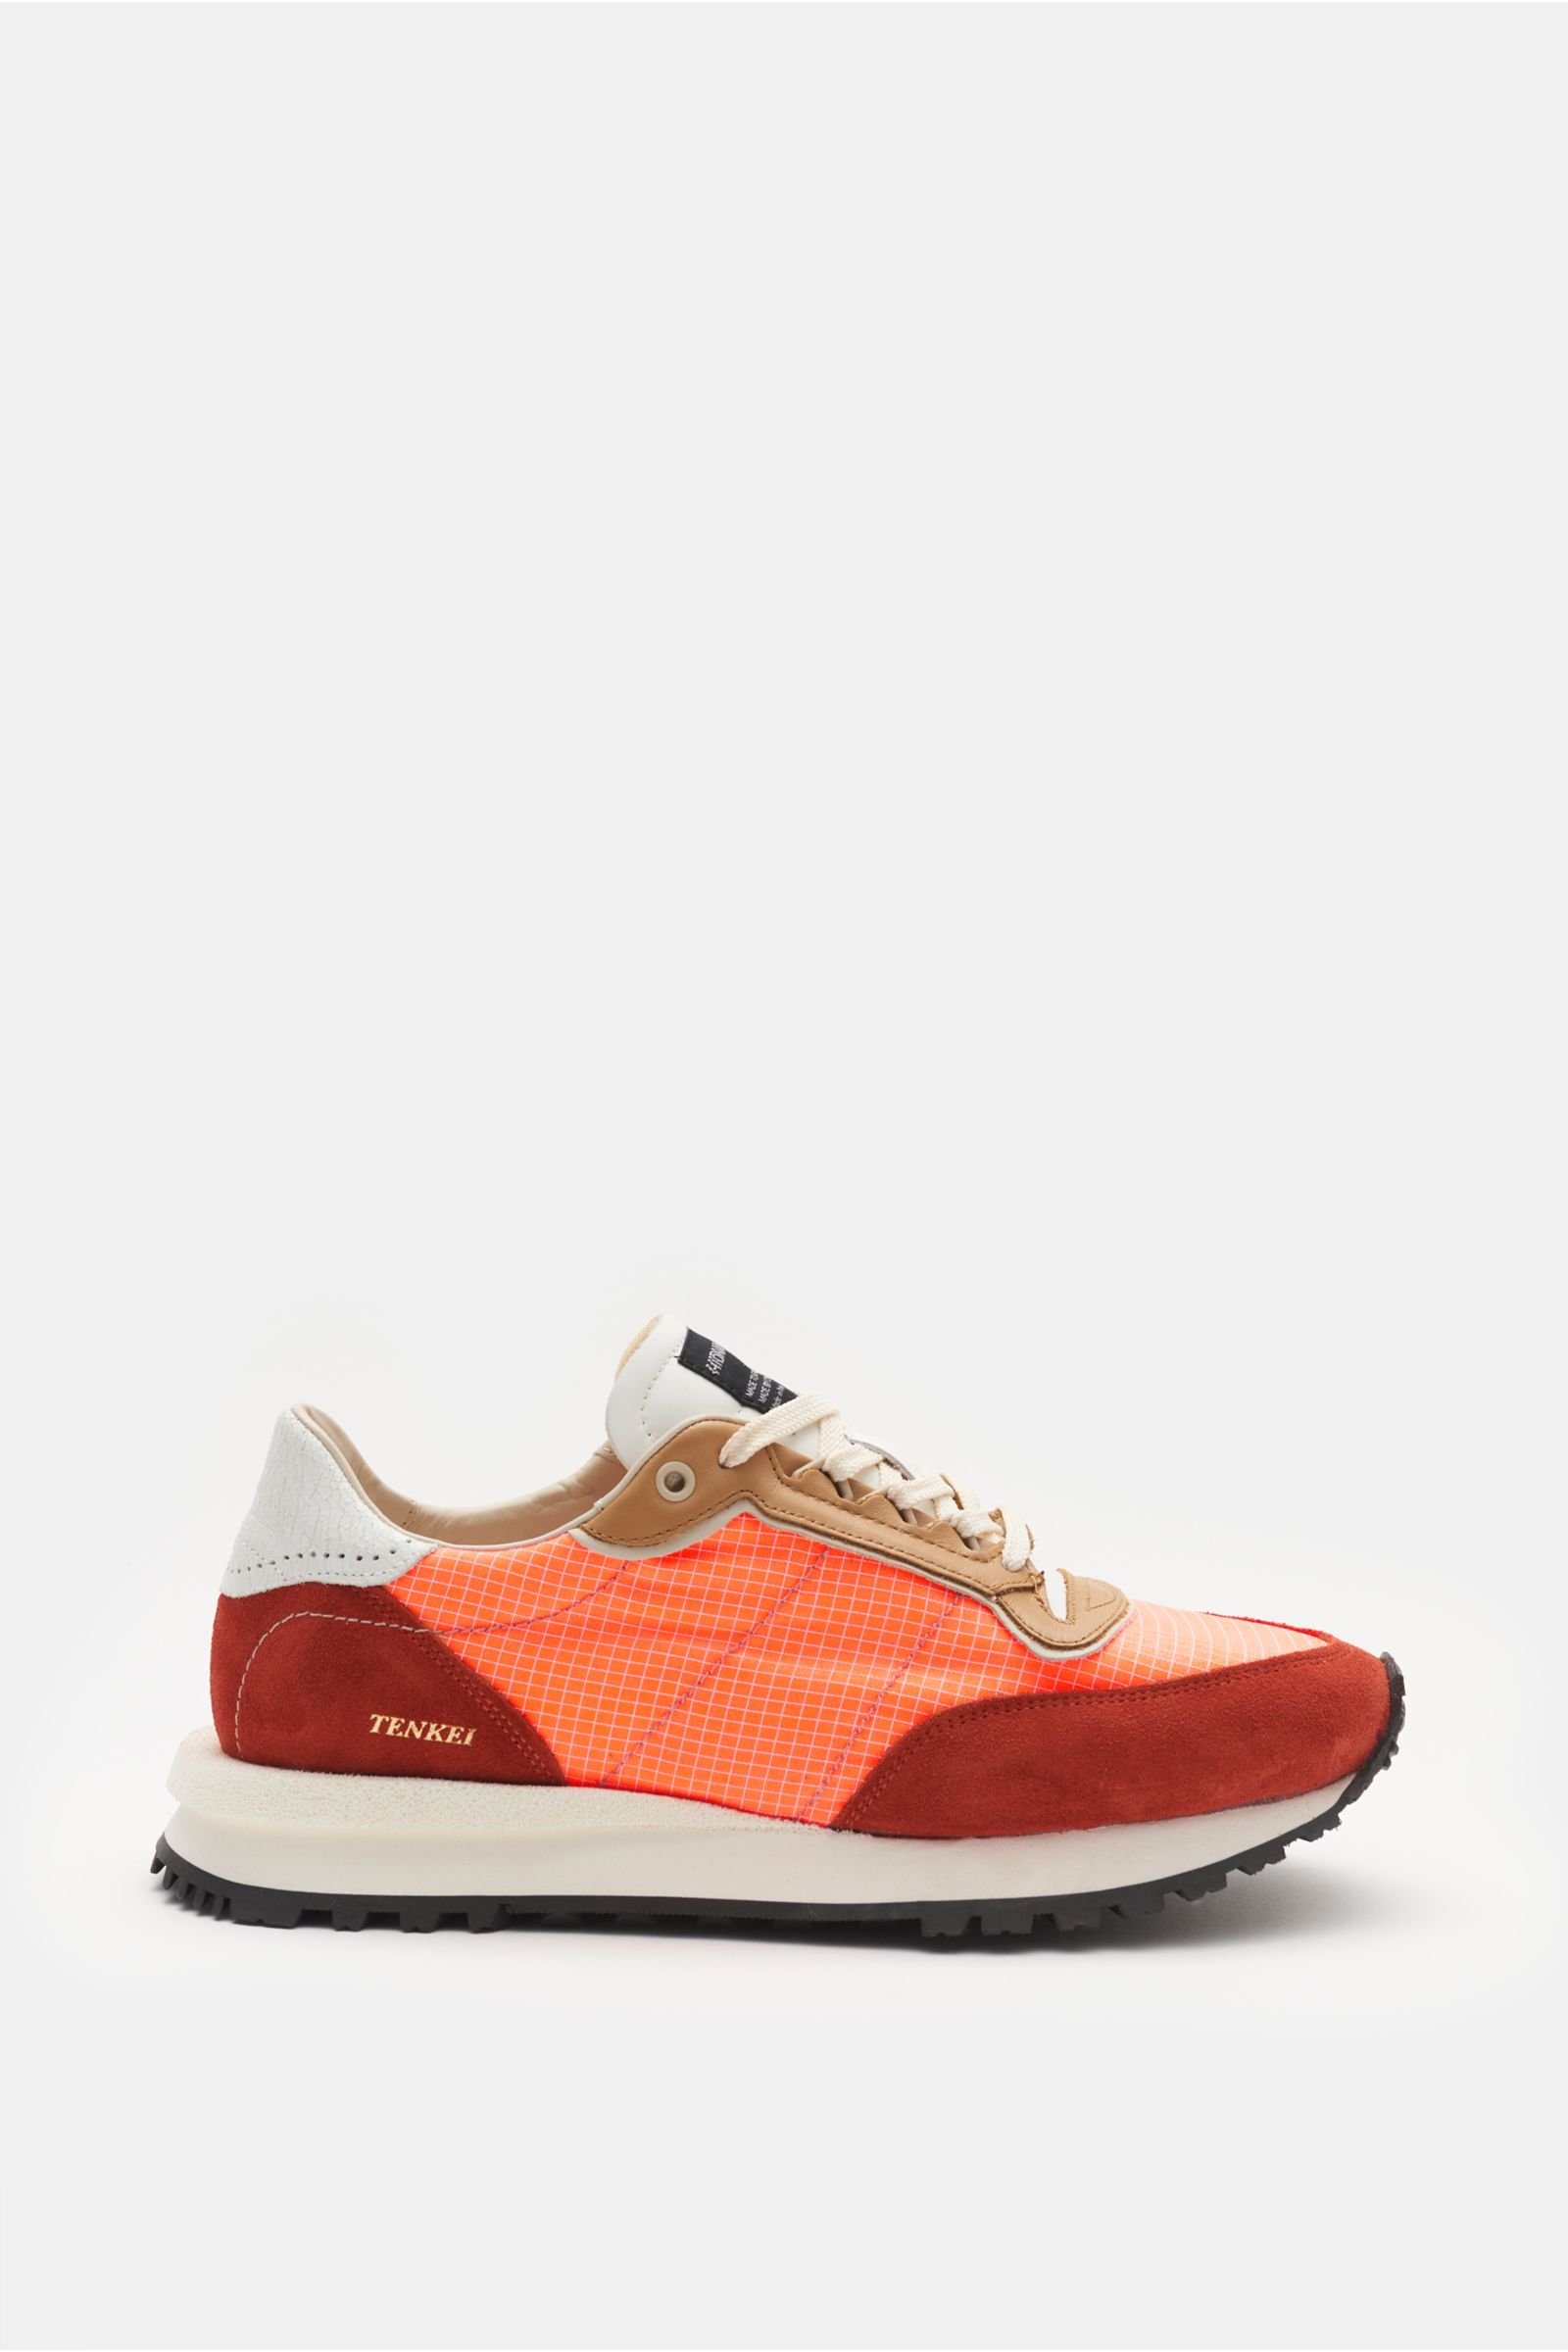 Sneakers 'Tenkei' orange/rust brown/beige patterned